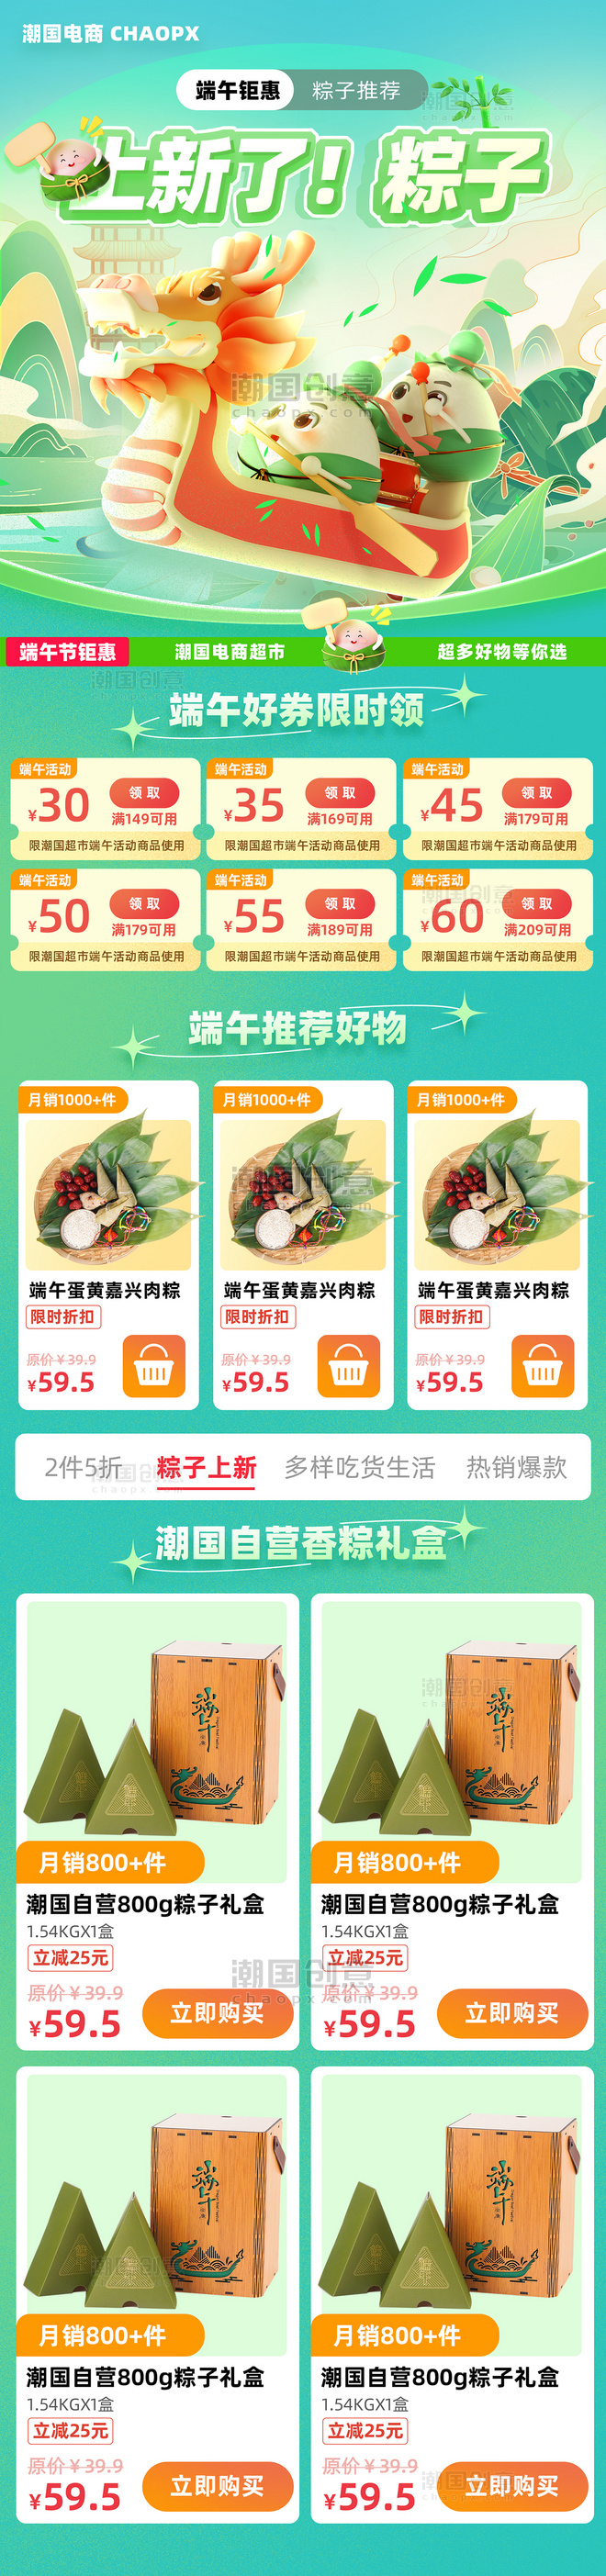 端午节龙舟粽子电商促销营销长图设计